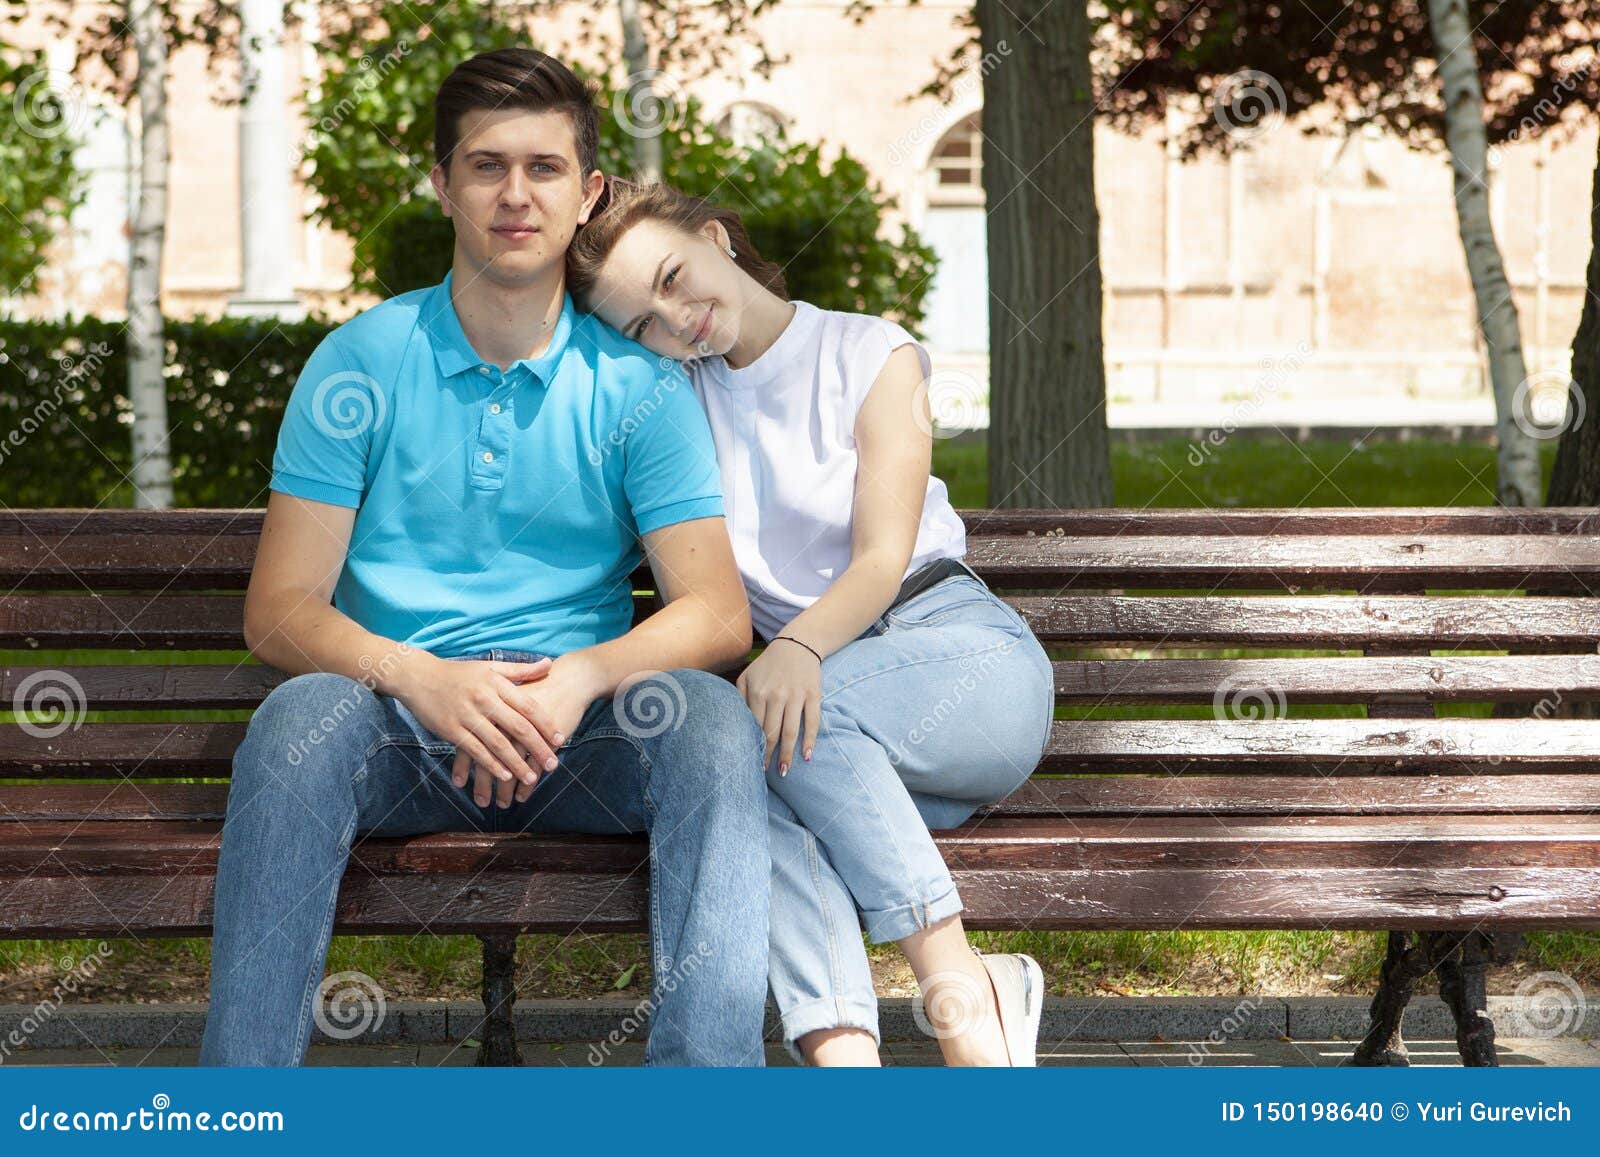 Мужчина сидит на плечах мужчины. Девушка положила голову на плечо. Положив голову на плечо. Парень и девушка сидят рядом. Пара на скамейке.